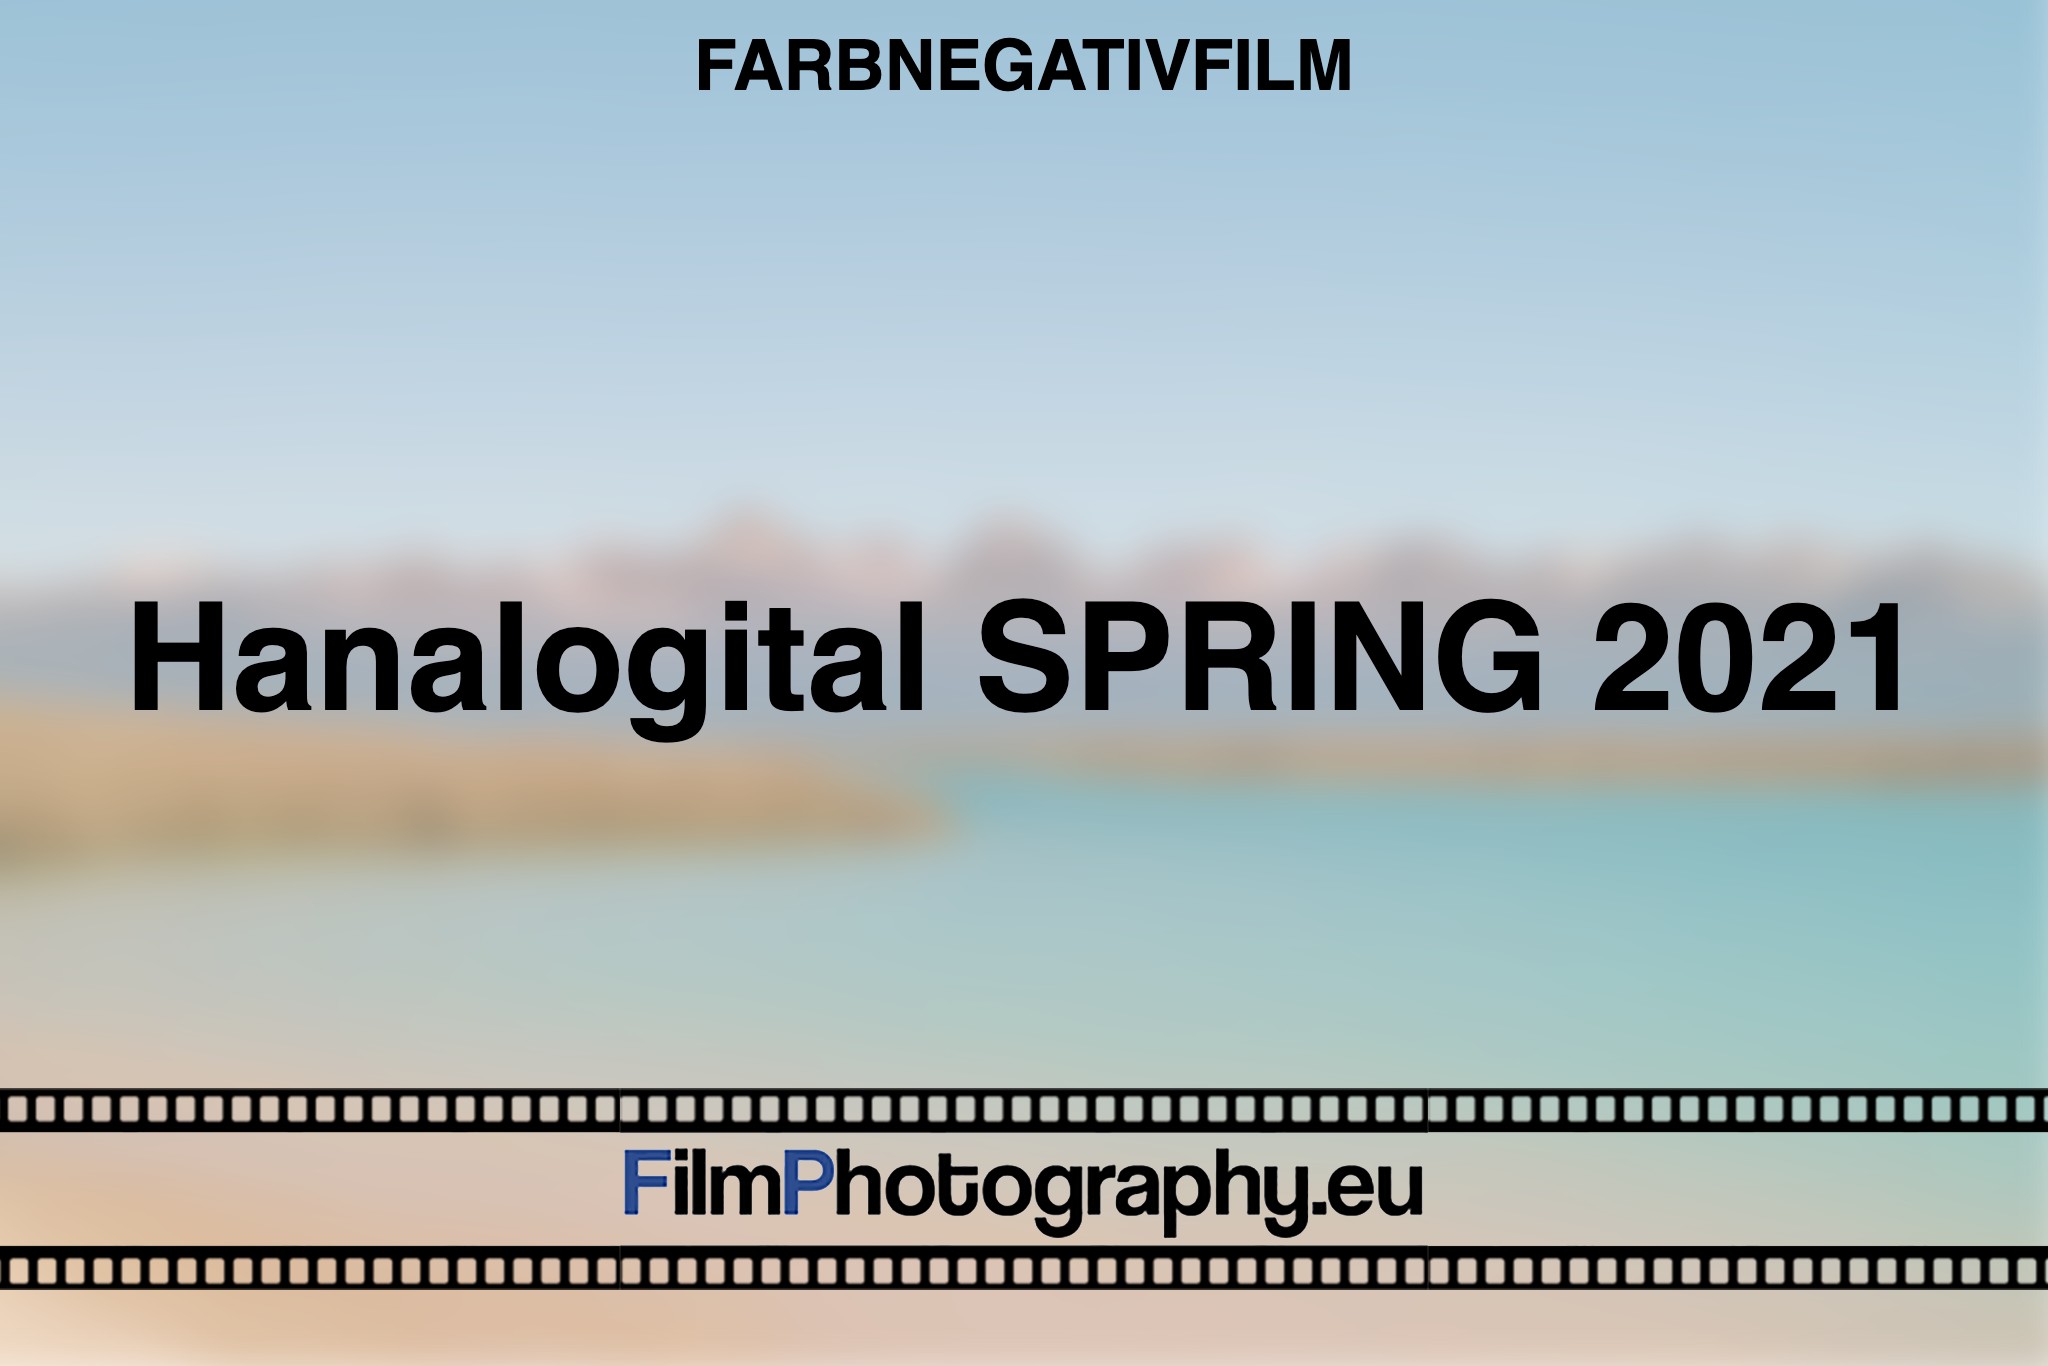 hanalogital-spring-2021-farbnegativfilm-bnv